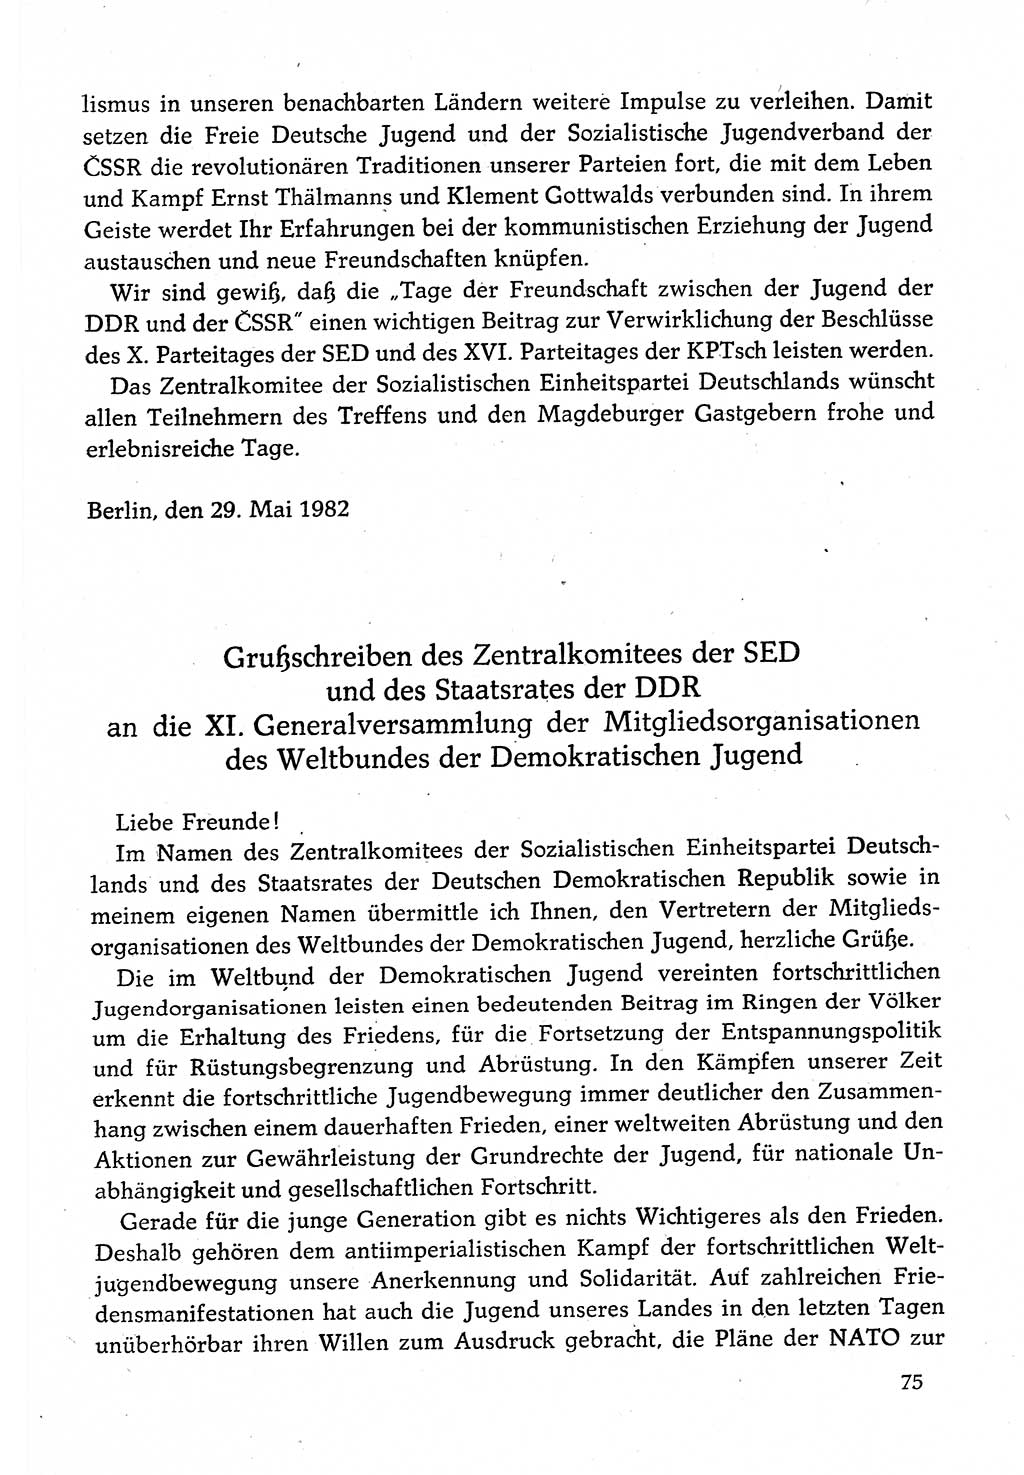 Dokumente der Sozialistischen Einheitspartei Deutschlands (SED) [Deutsche Demokratische Republik (DDR)] 1982-1983, Seite 75 (Dok. SED DDR 1982-1983, S. 75)